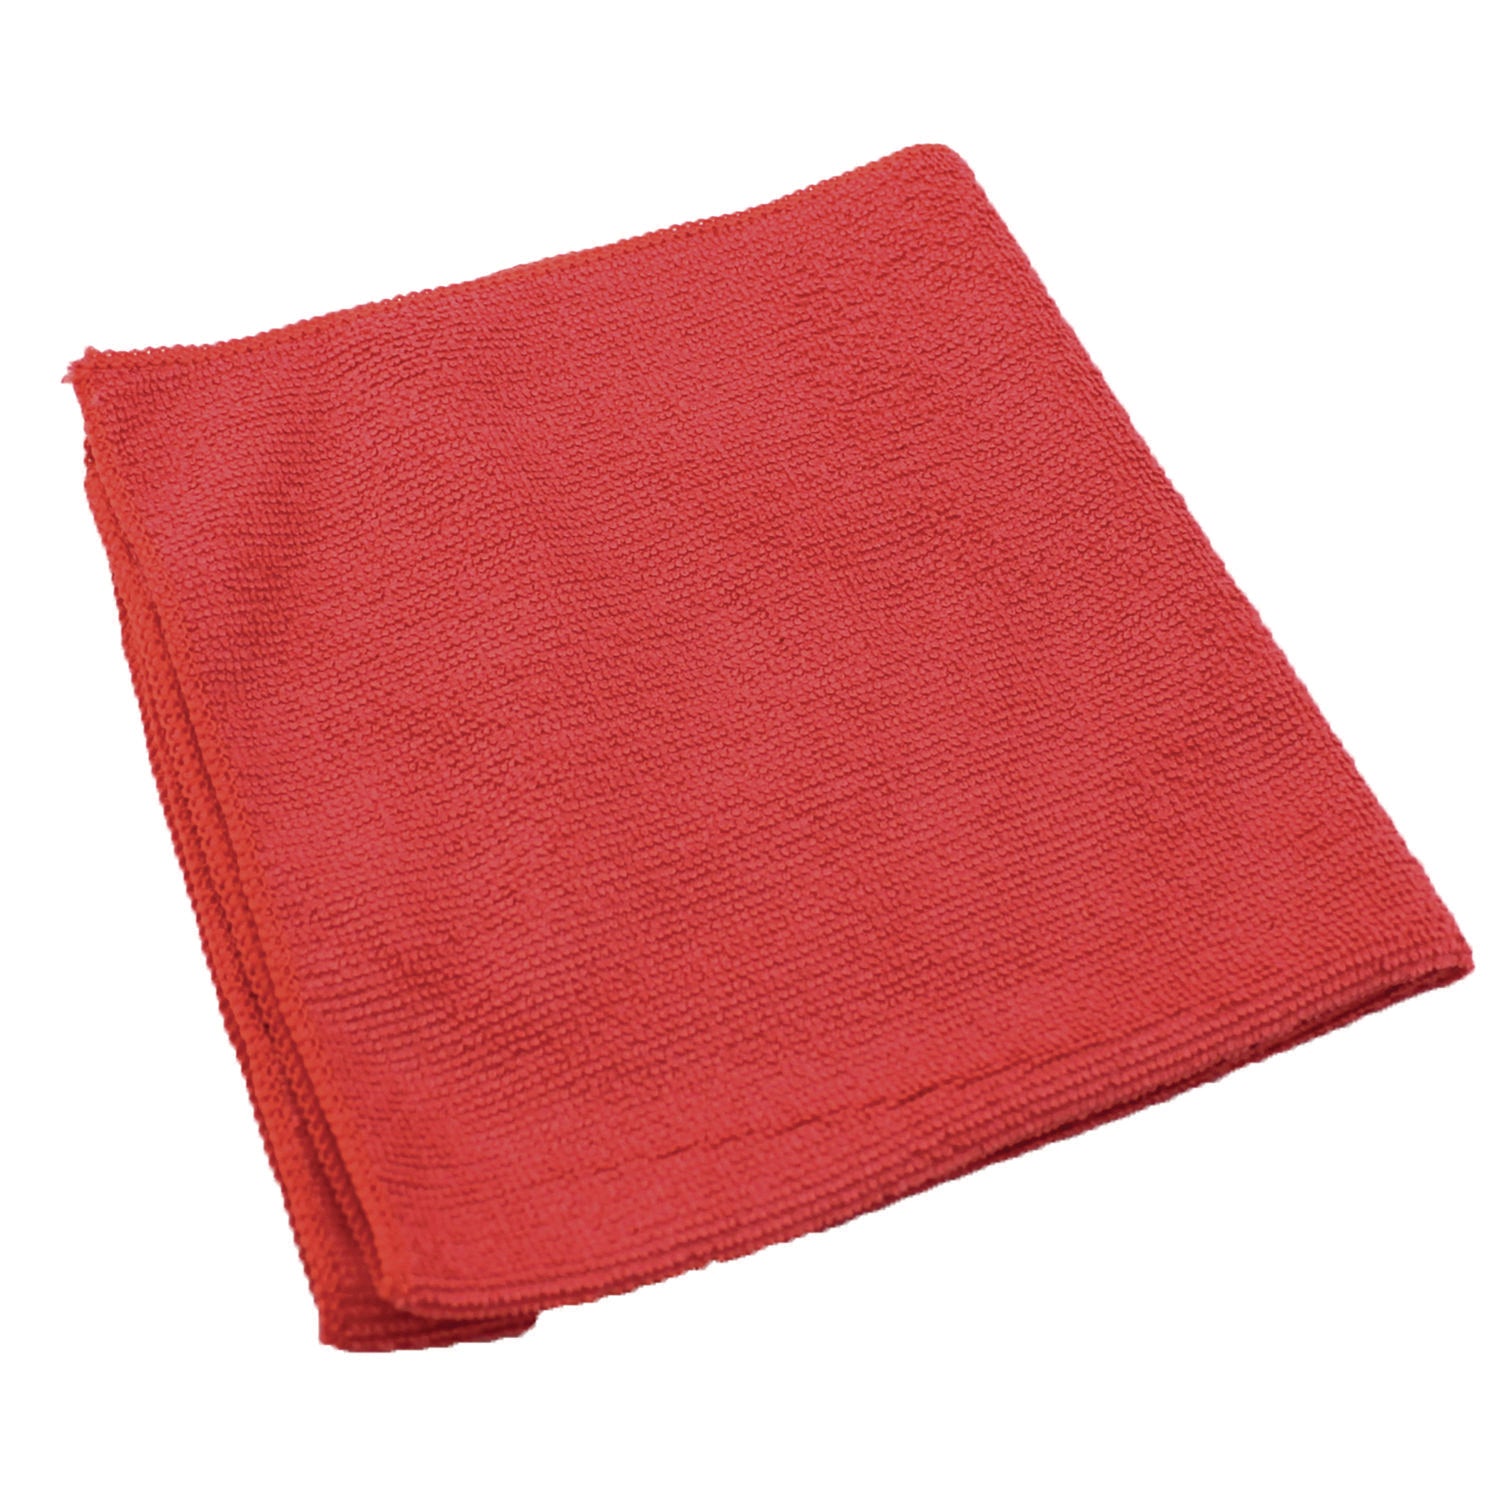 Lightweight Microfiber Cloths, 16 x 16, Red, 240/Carton - 4